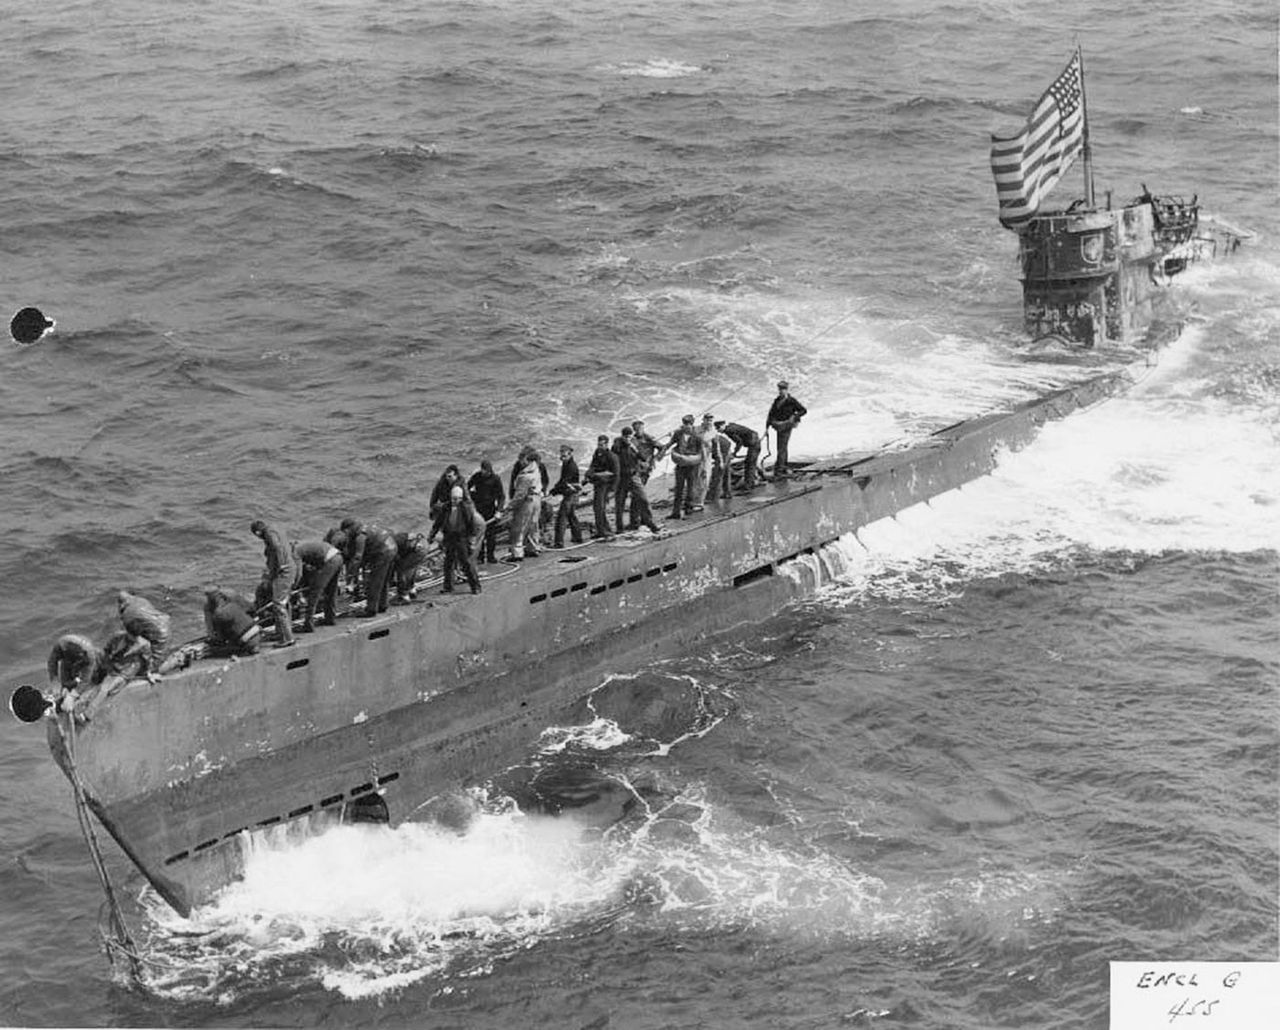 U-505 po zdobyciu przez Amerykanów. Widoczny brak wyważenia okrętu, który ma uniesiony dziób i zanurzoną rufę